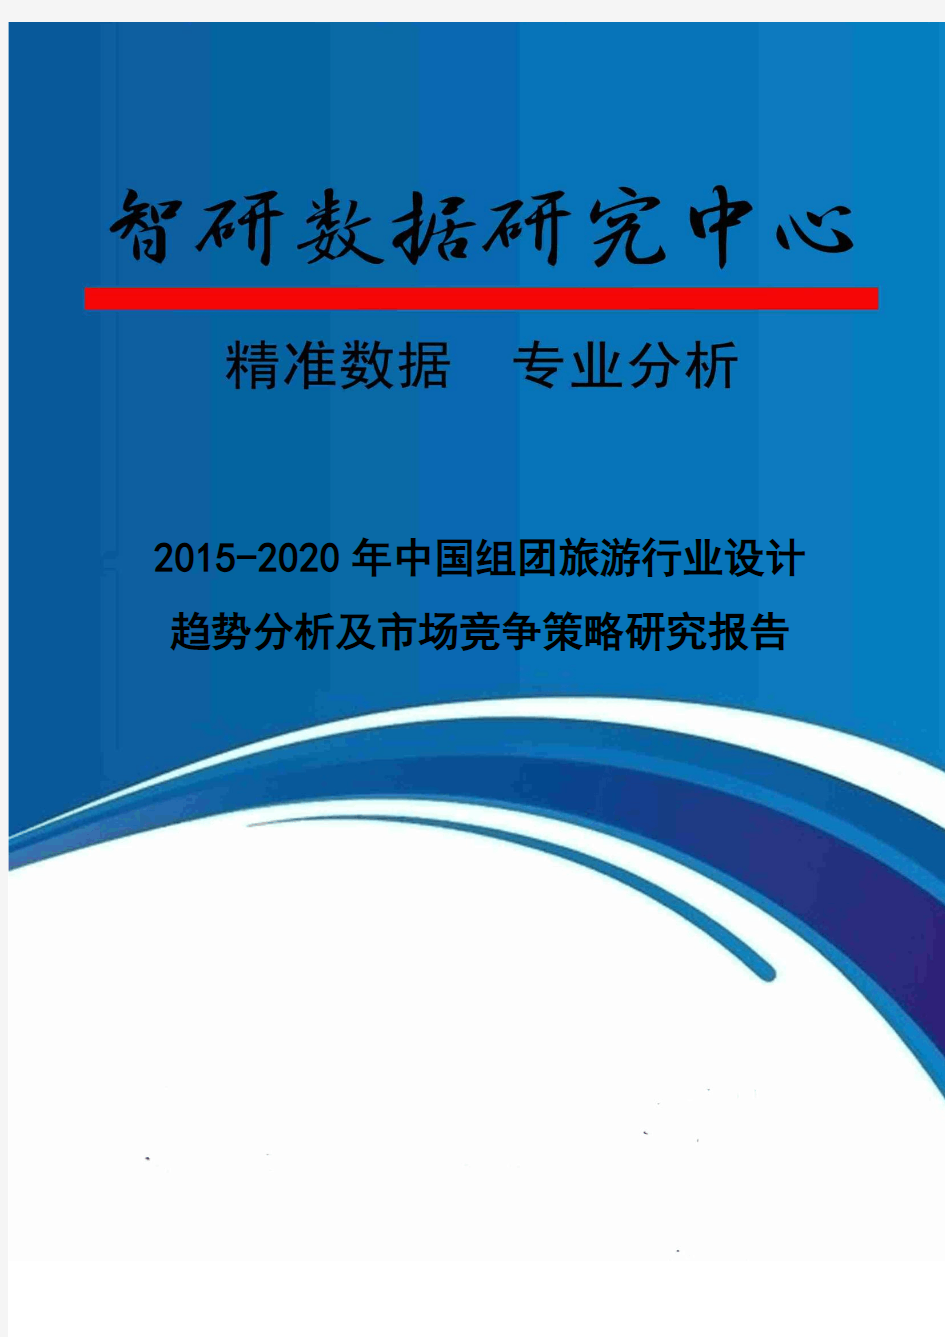 2015-2020年中国组团旅游行业设计趋势分析及市场竞争策略研究报告